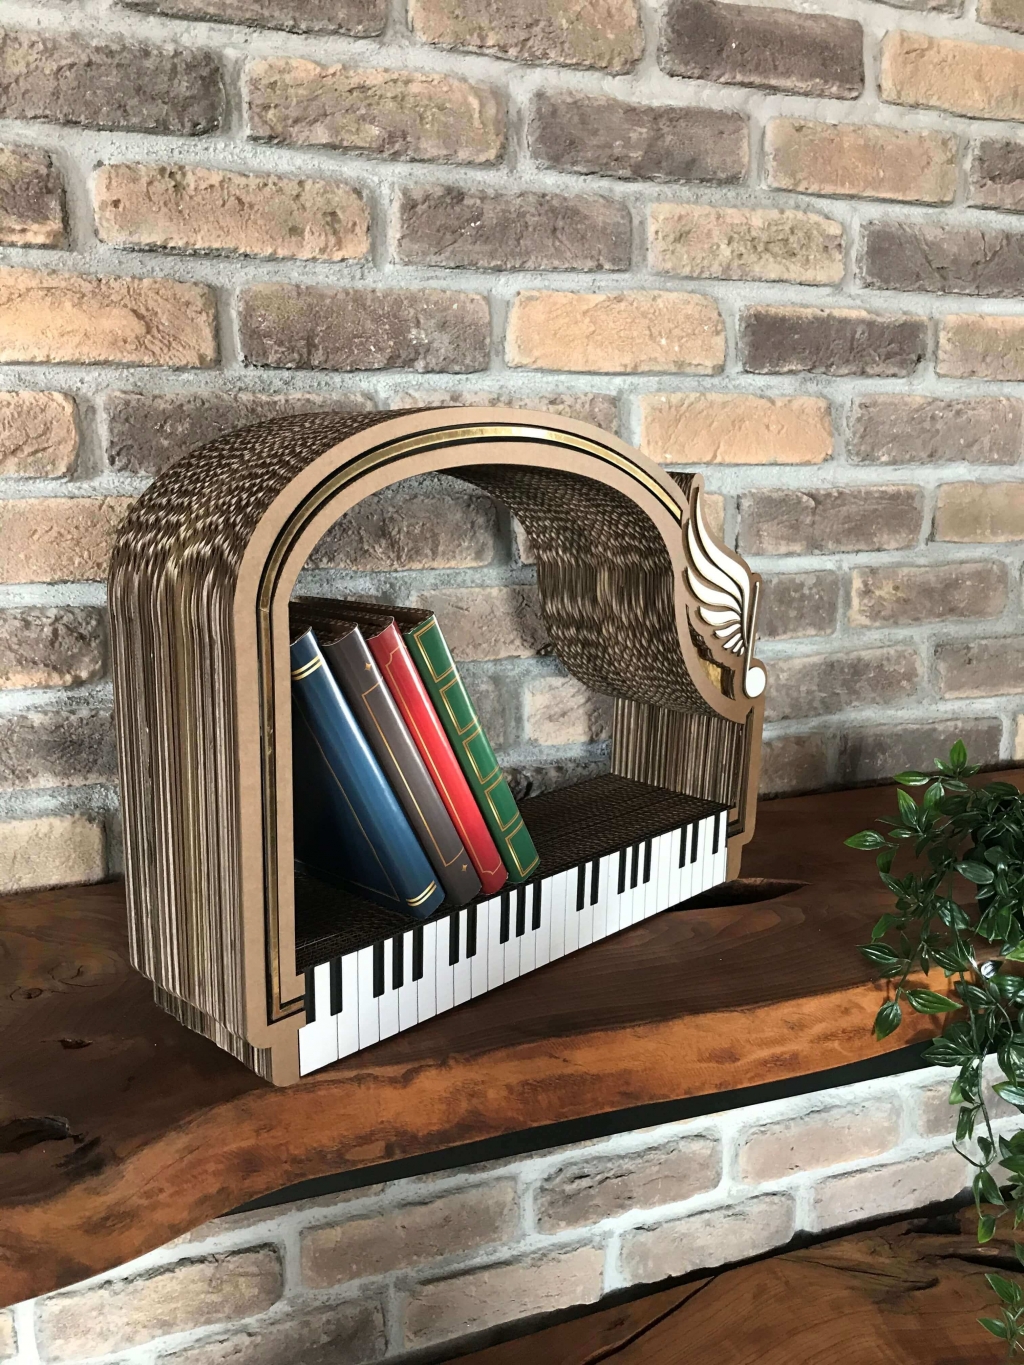 piano bookshelf